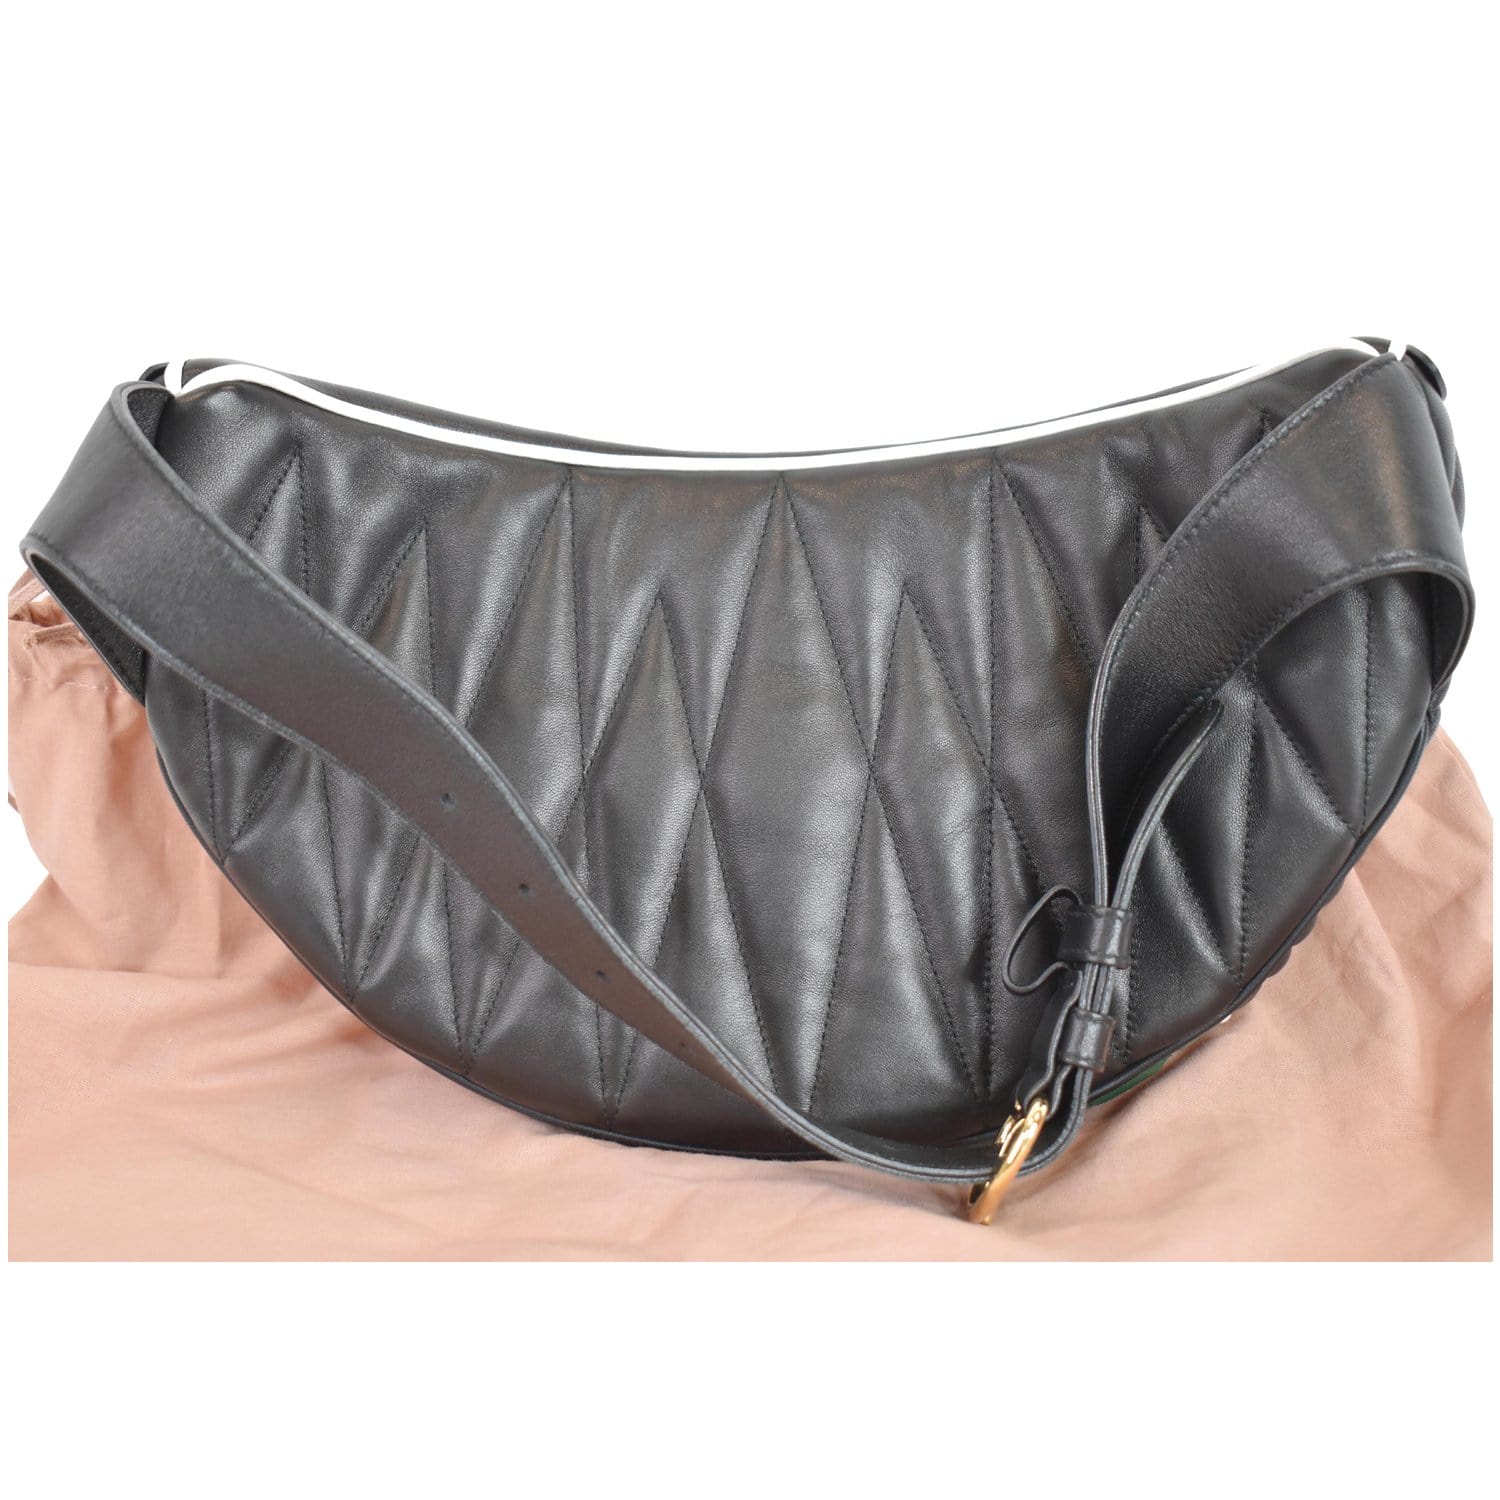 Miu Miu, Bags, Authentic Miu Miu Sling Bag In Leather